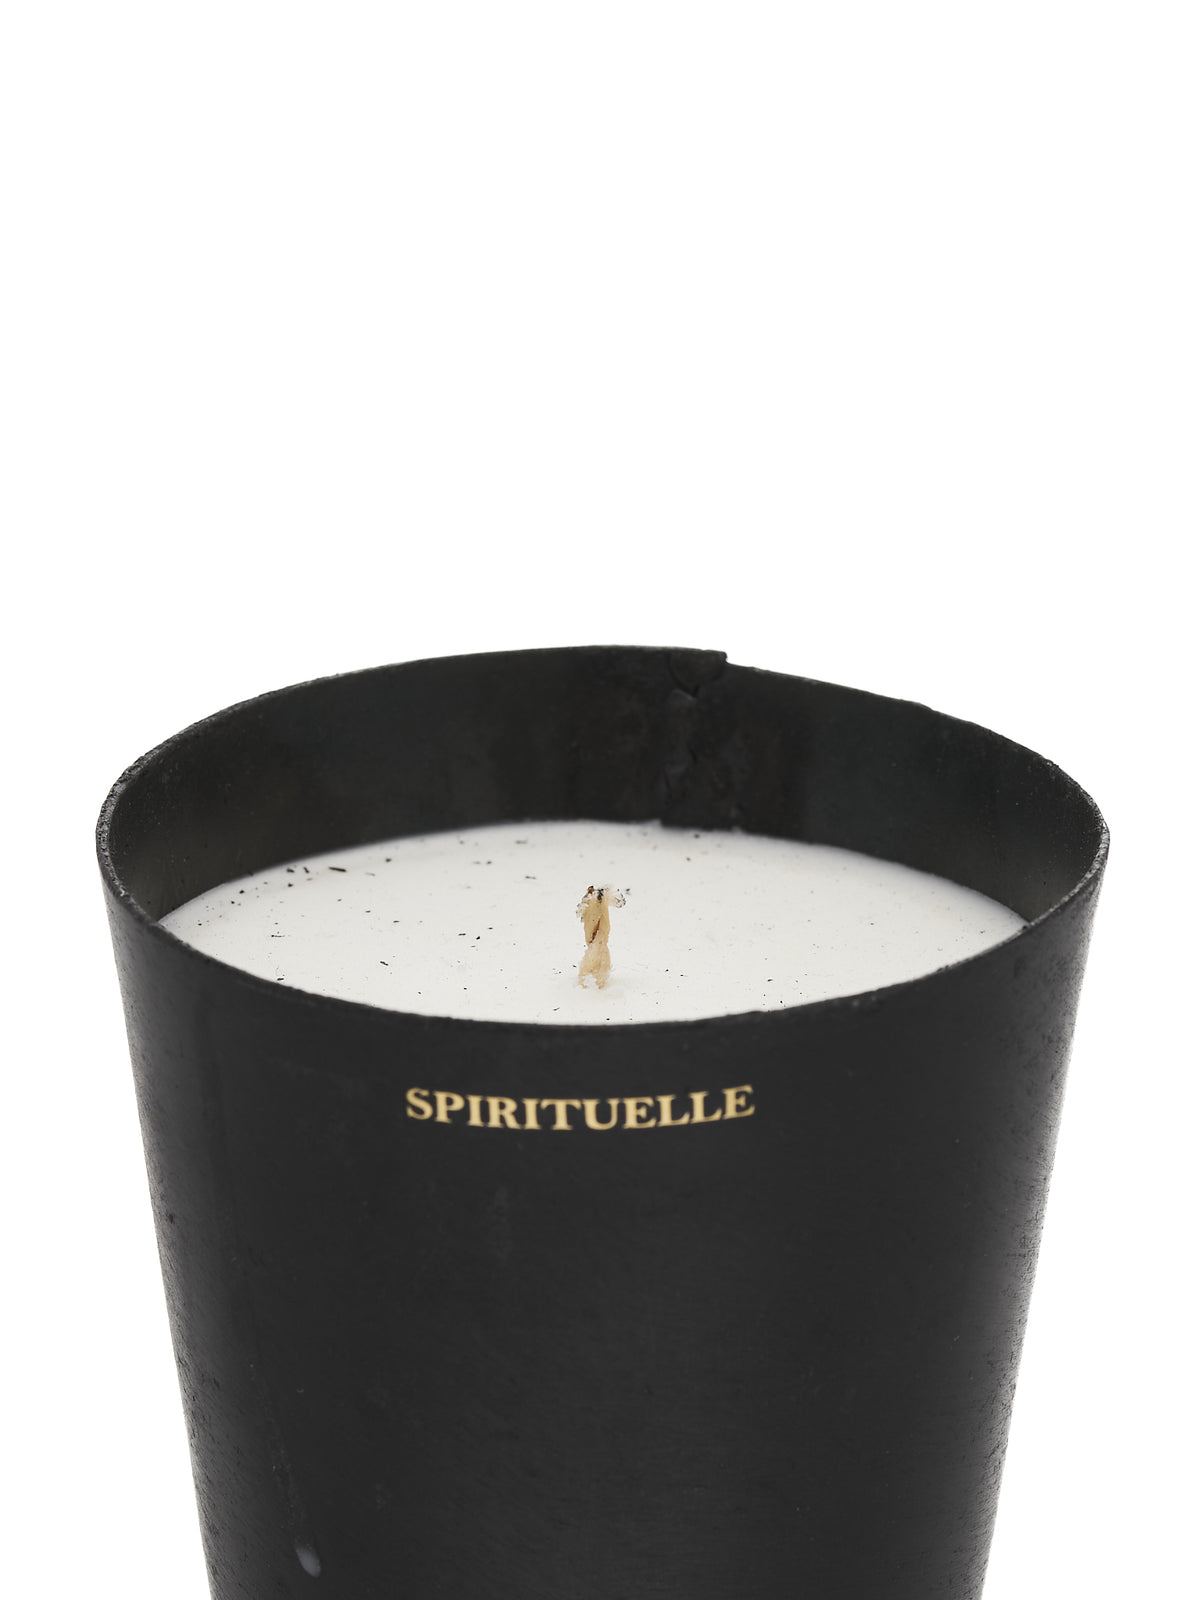 Spirituelle Candle (MAD-BVP-SP-WW-WHITE-SPIRITUELL)